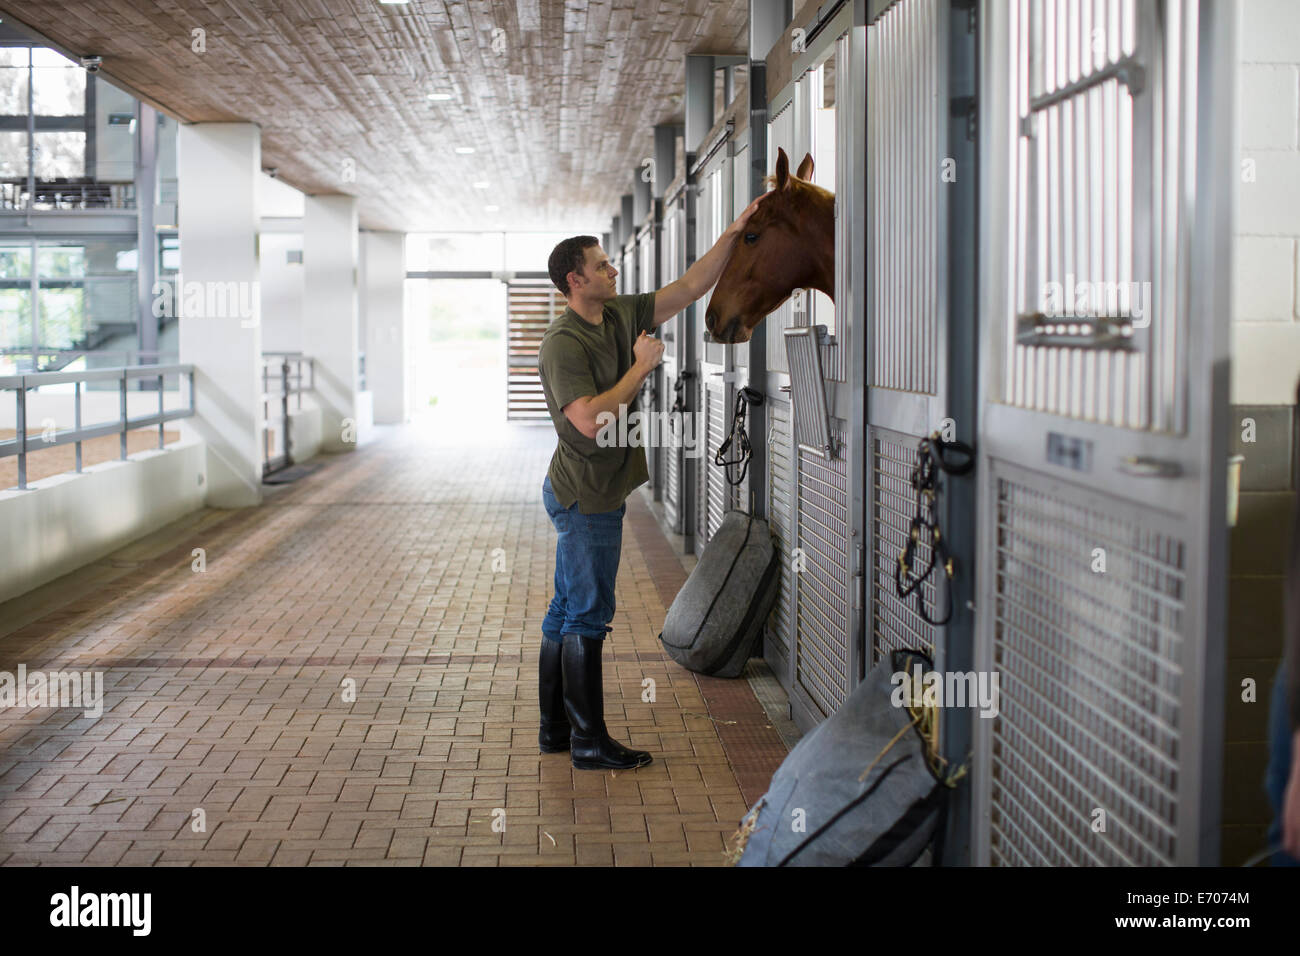 Homme stablehand petting horse en équitation Banque D'Images